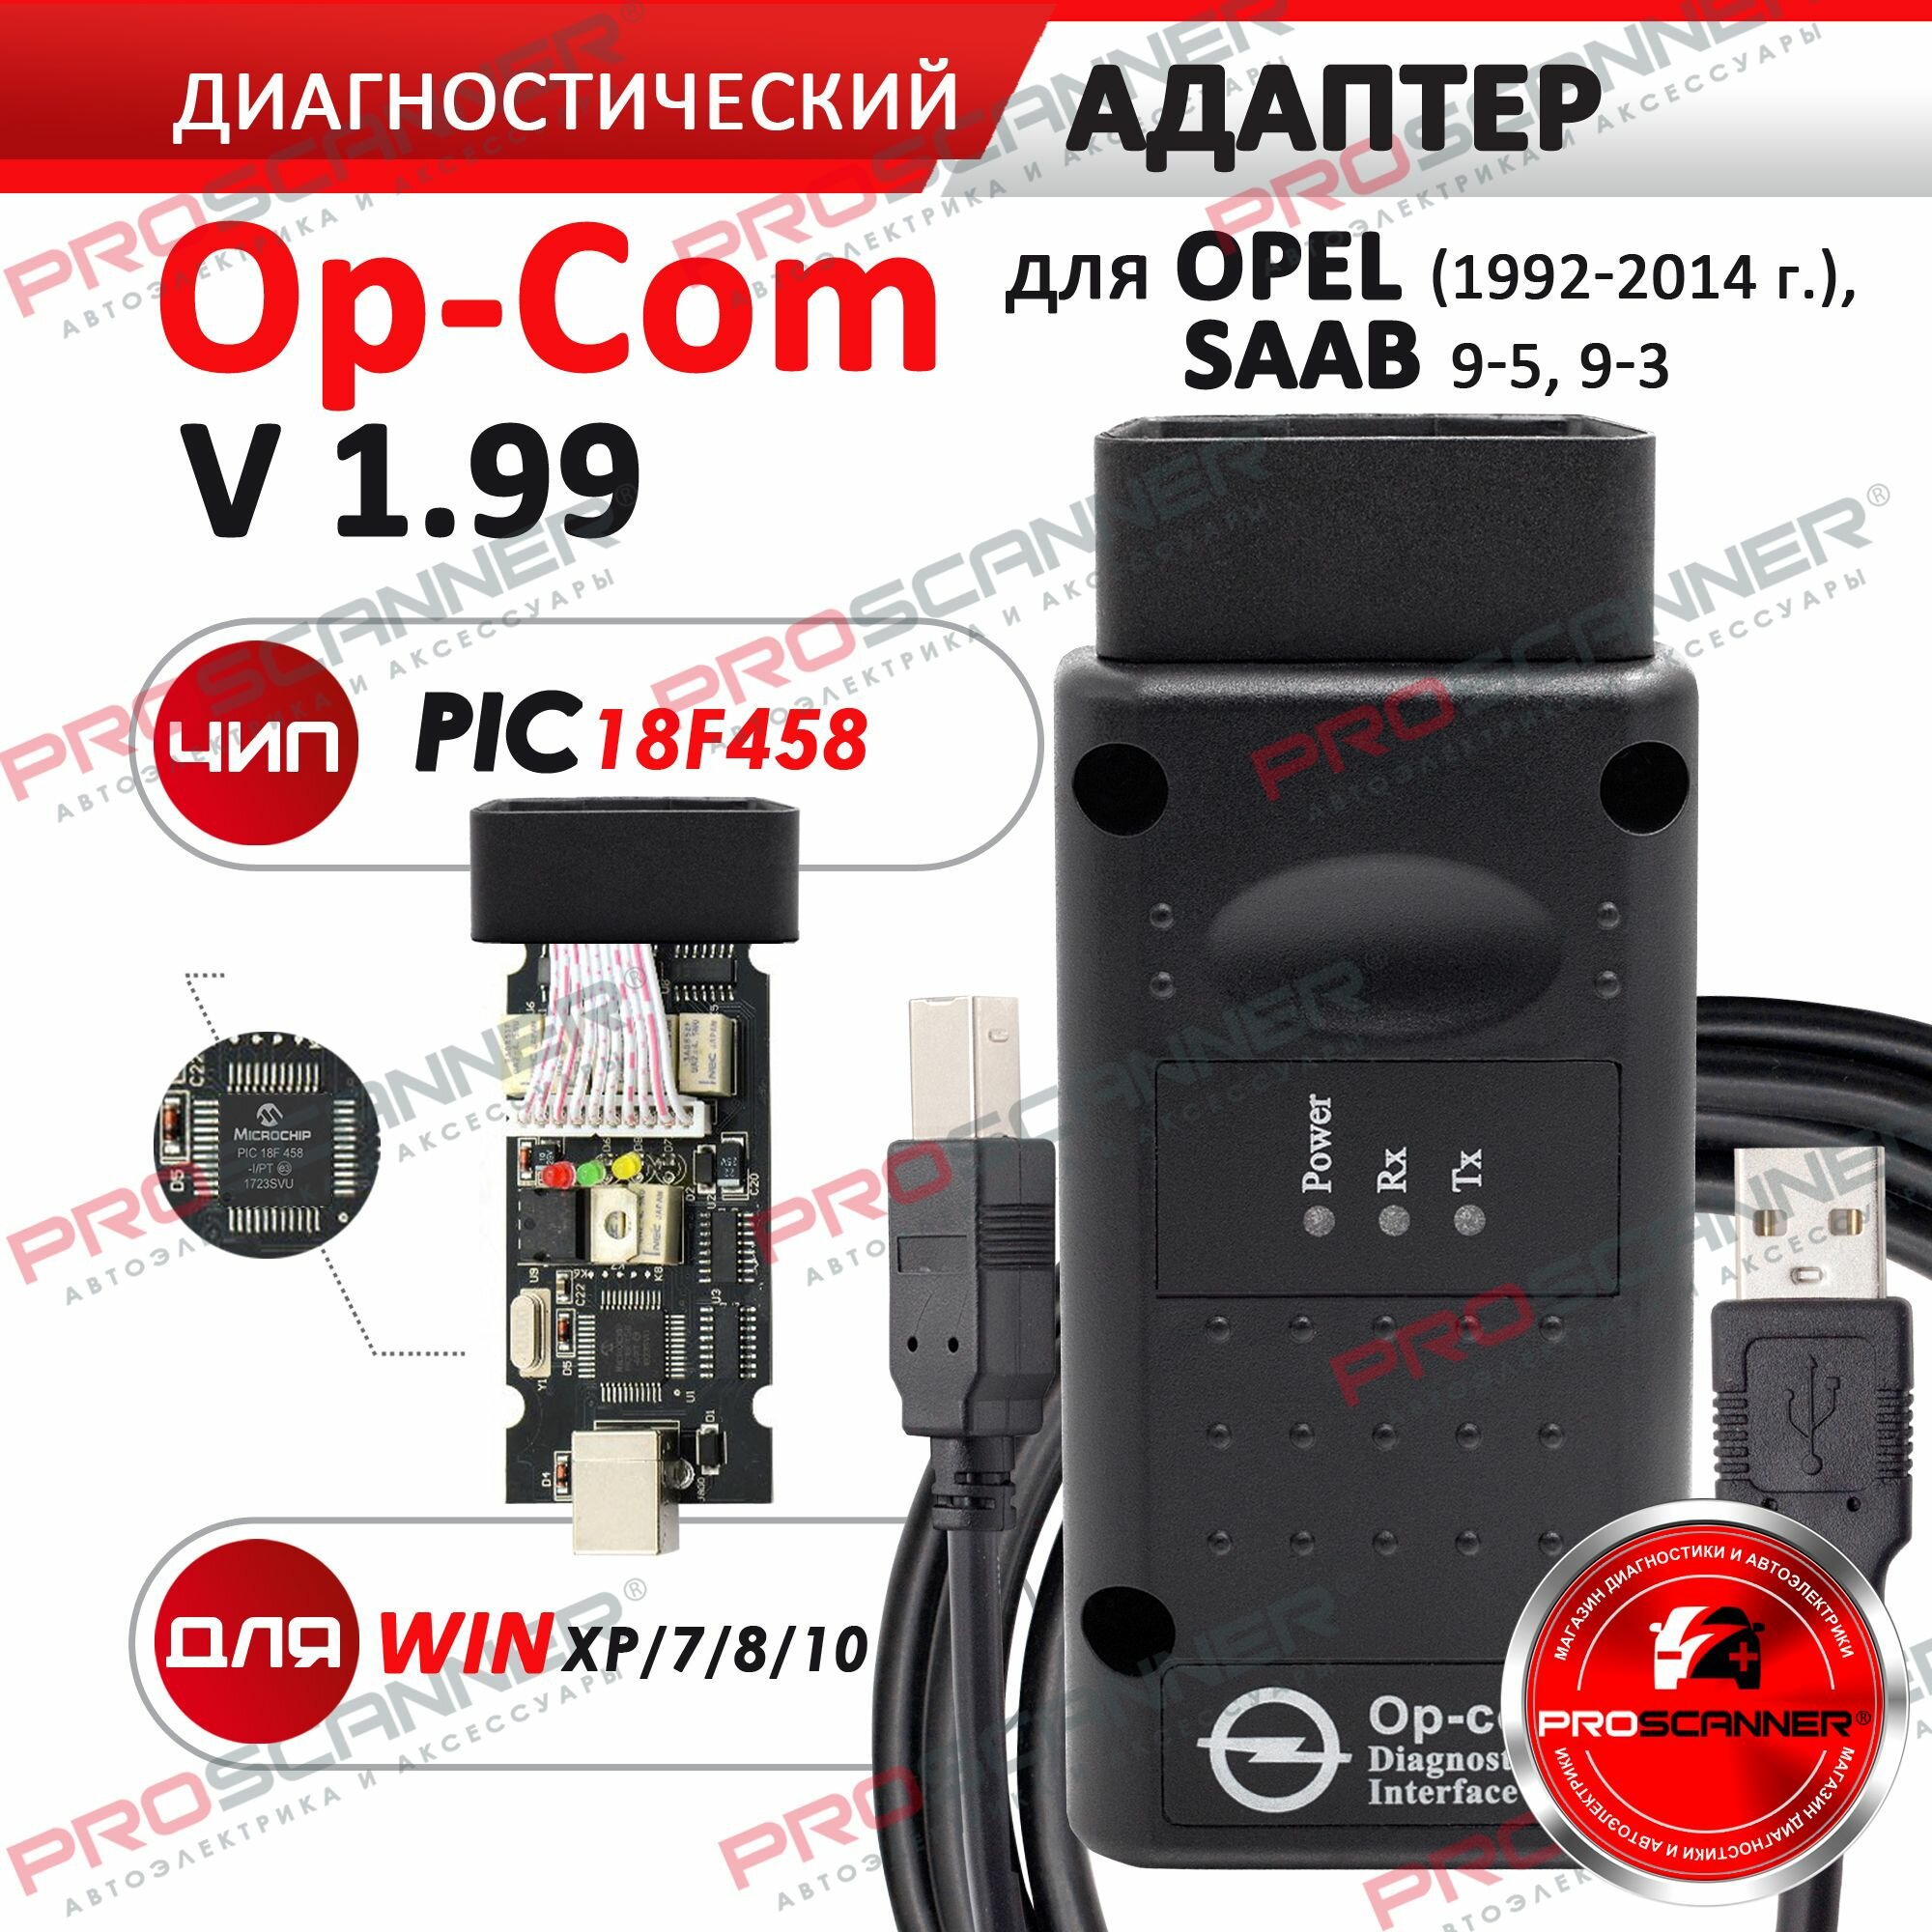 Автосканер Op Com v.1.99 для Opel (полная версия) диагностический адаптер OPCOM